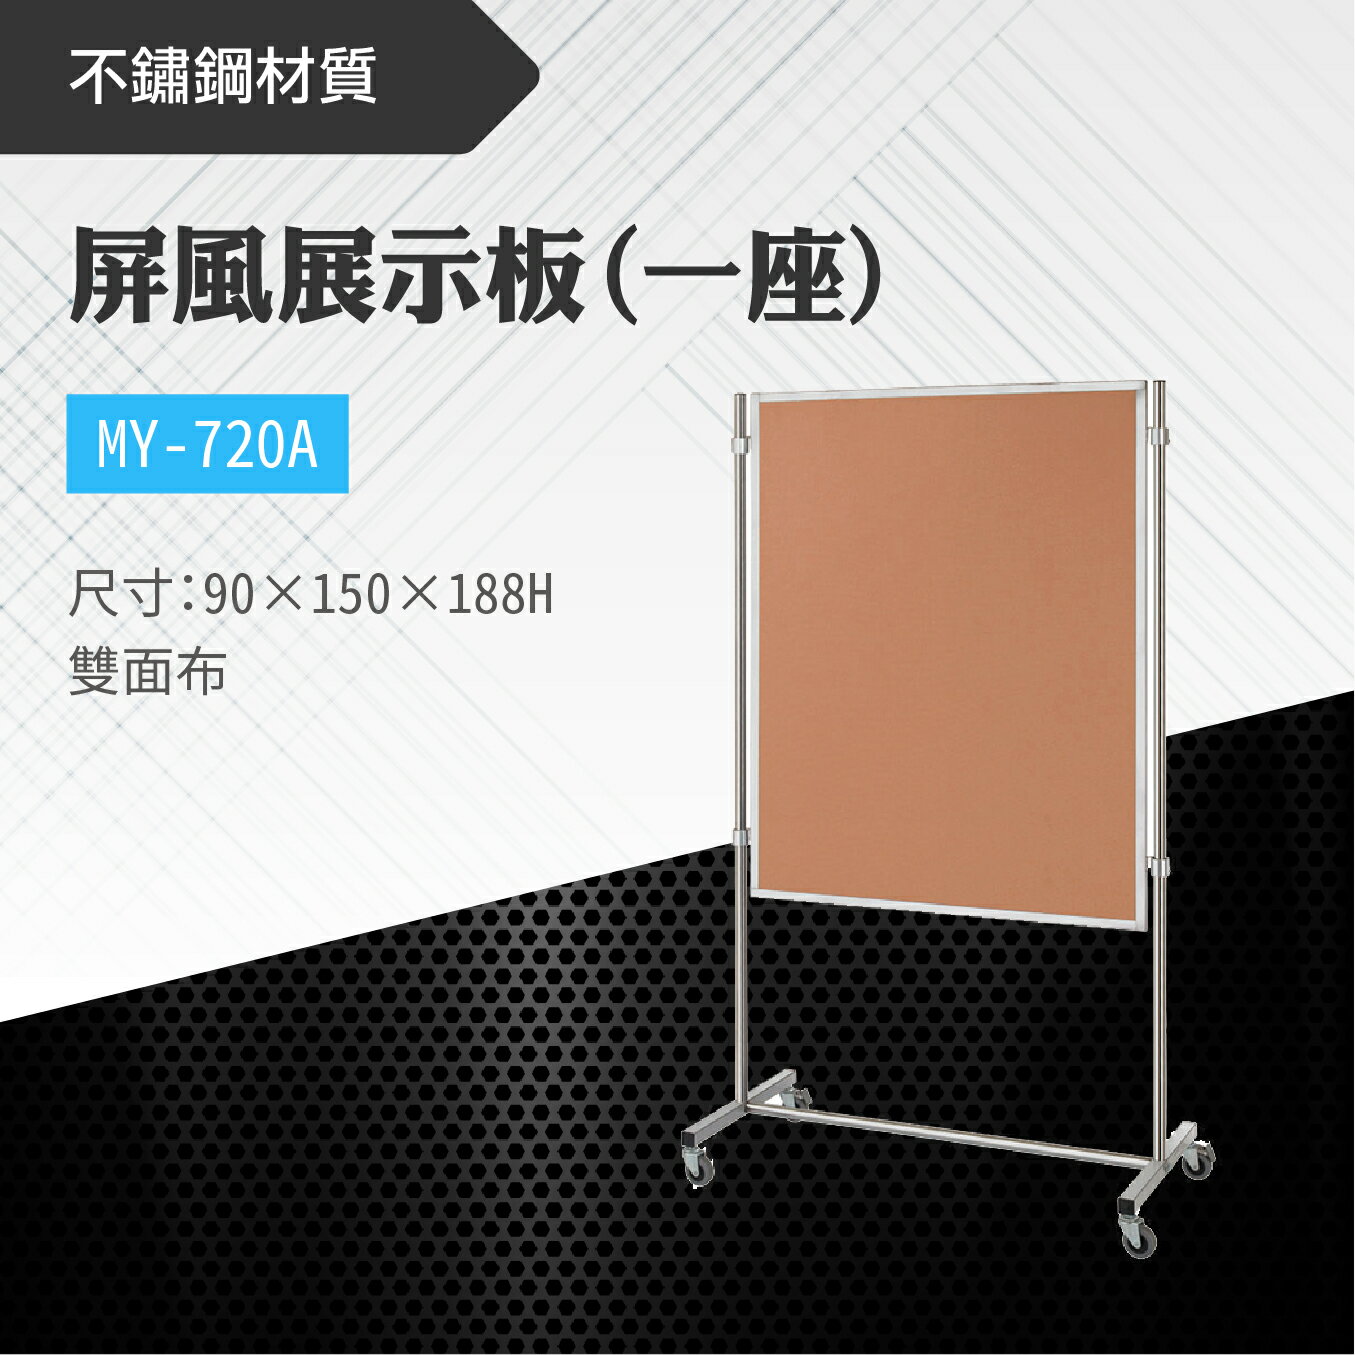 台灣製 屏風展示板MY-720A(雙面布) 布告欄 展板 海報板 立式展板 展示架 指示牌 廣告板 標示板 學校 活動